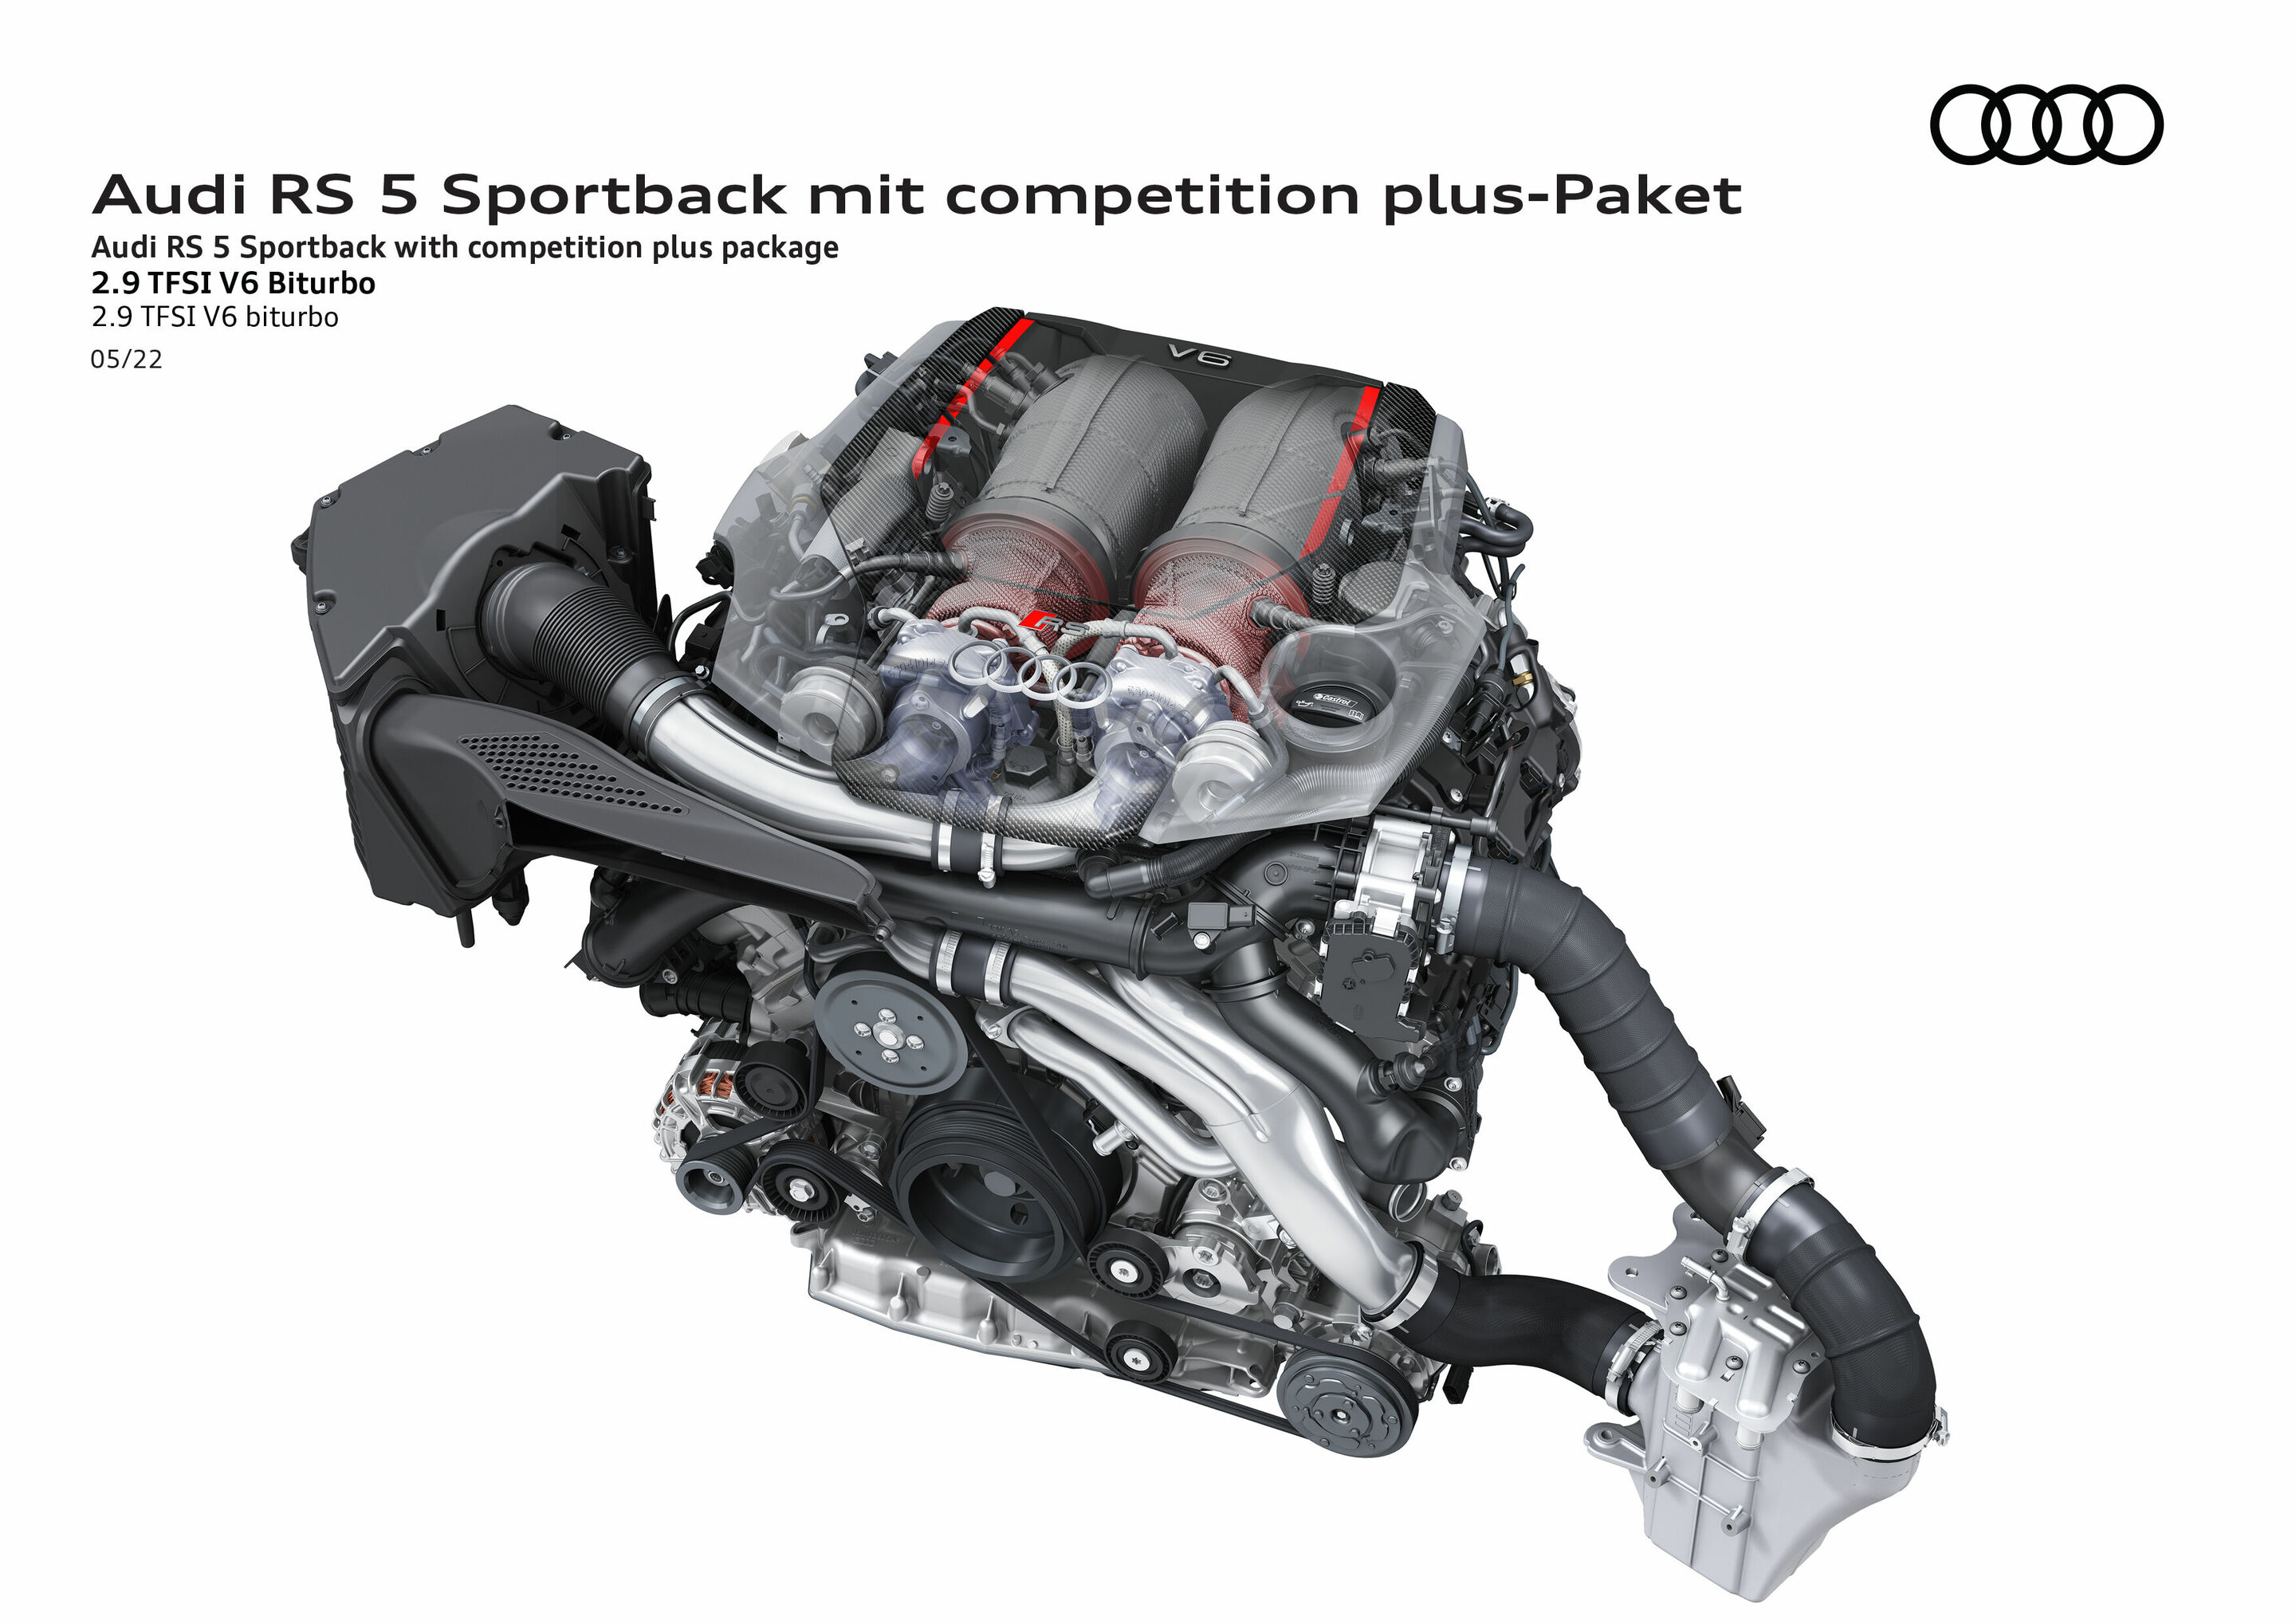 El Audi RS Q5 podría hacerse realidad, con el motor 2.9 TFSI V6